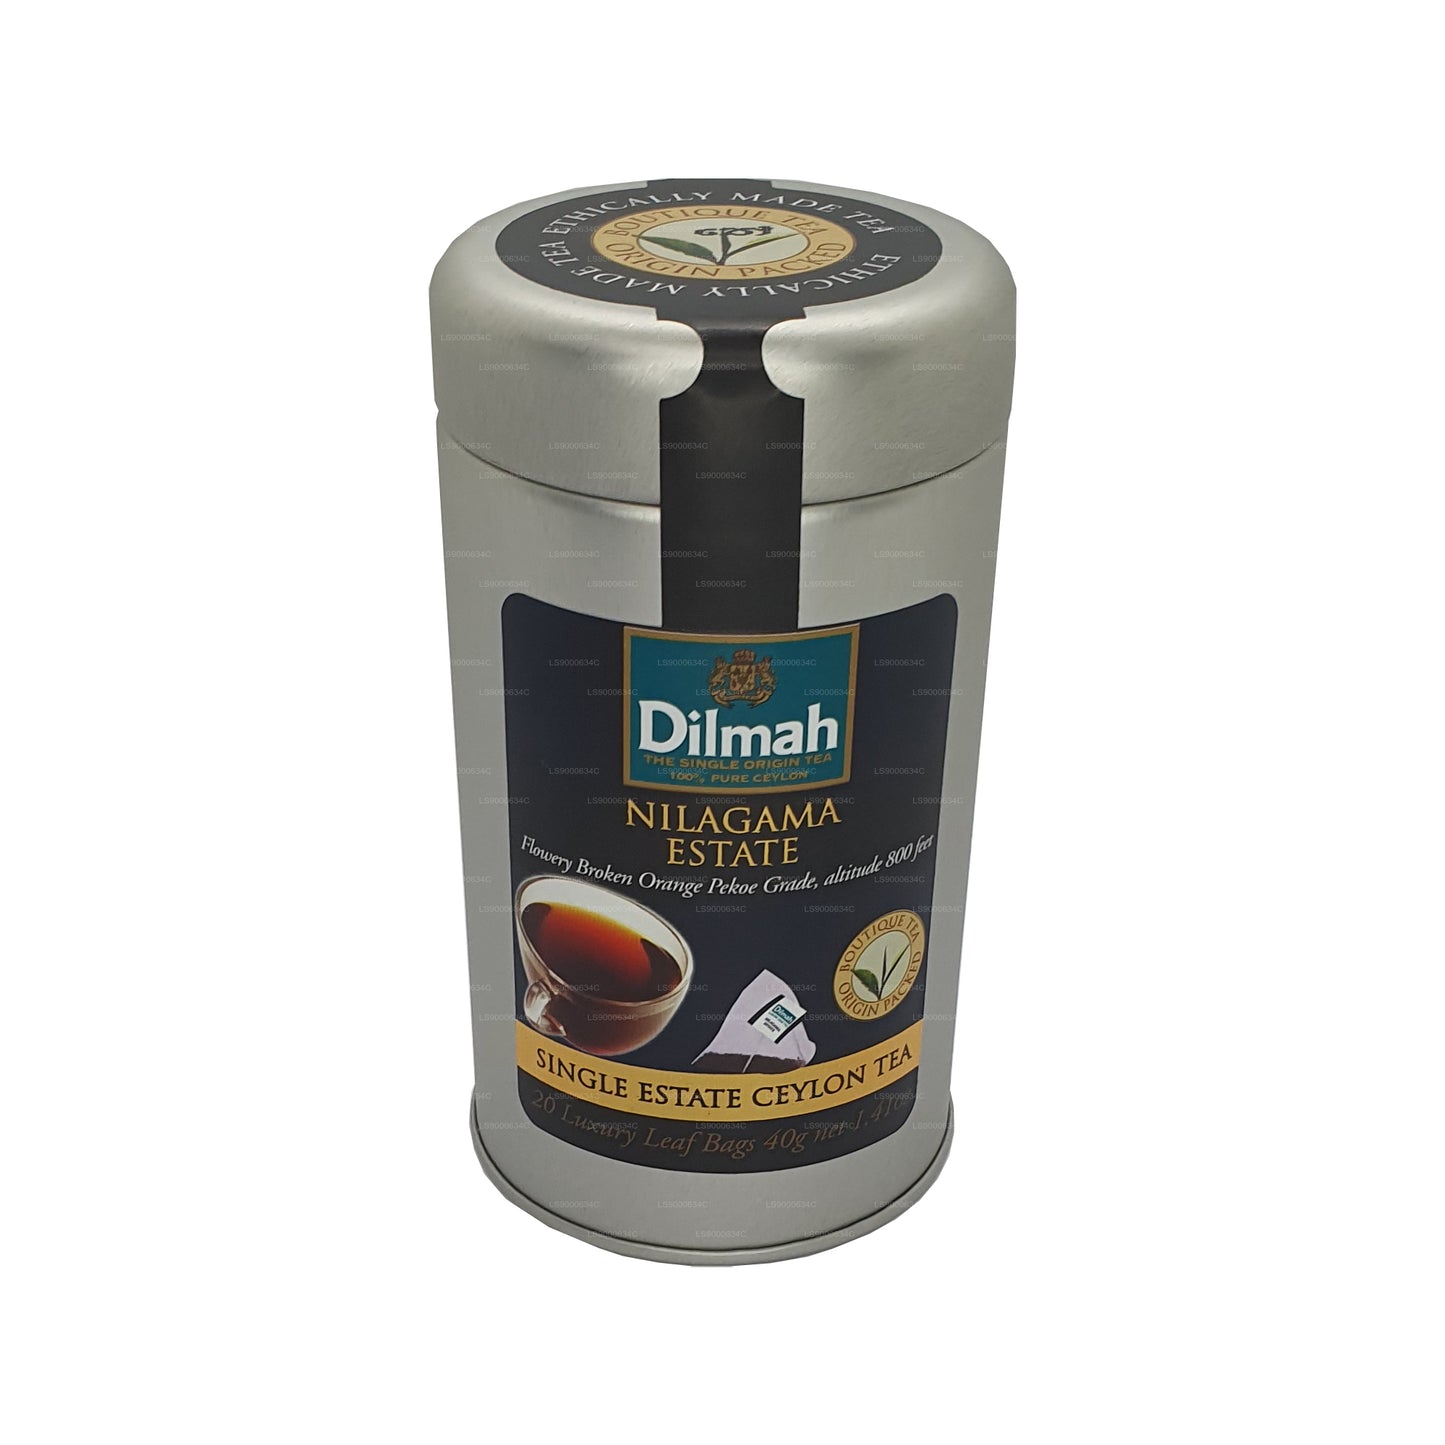 Dilmah Nilagama 单一庄园茶 (40g) 20 个茶包